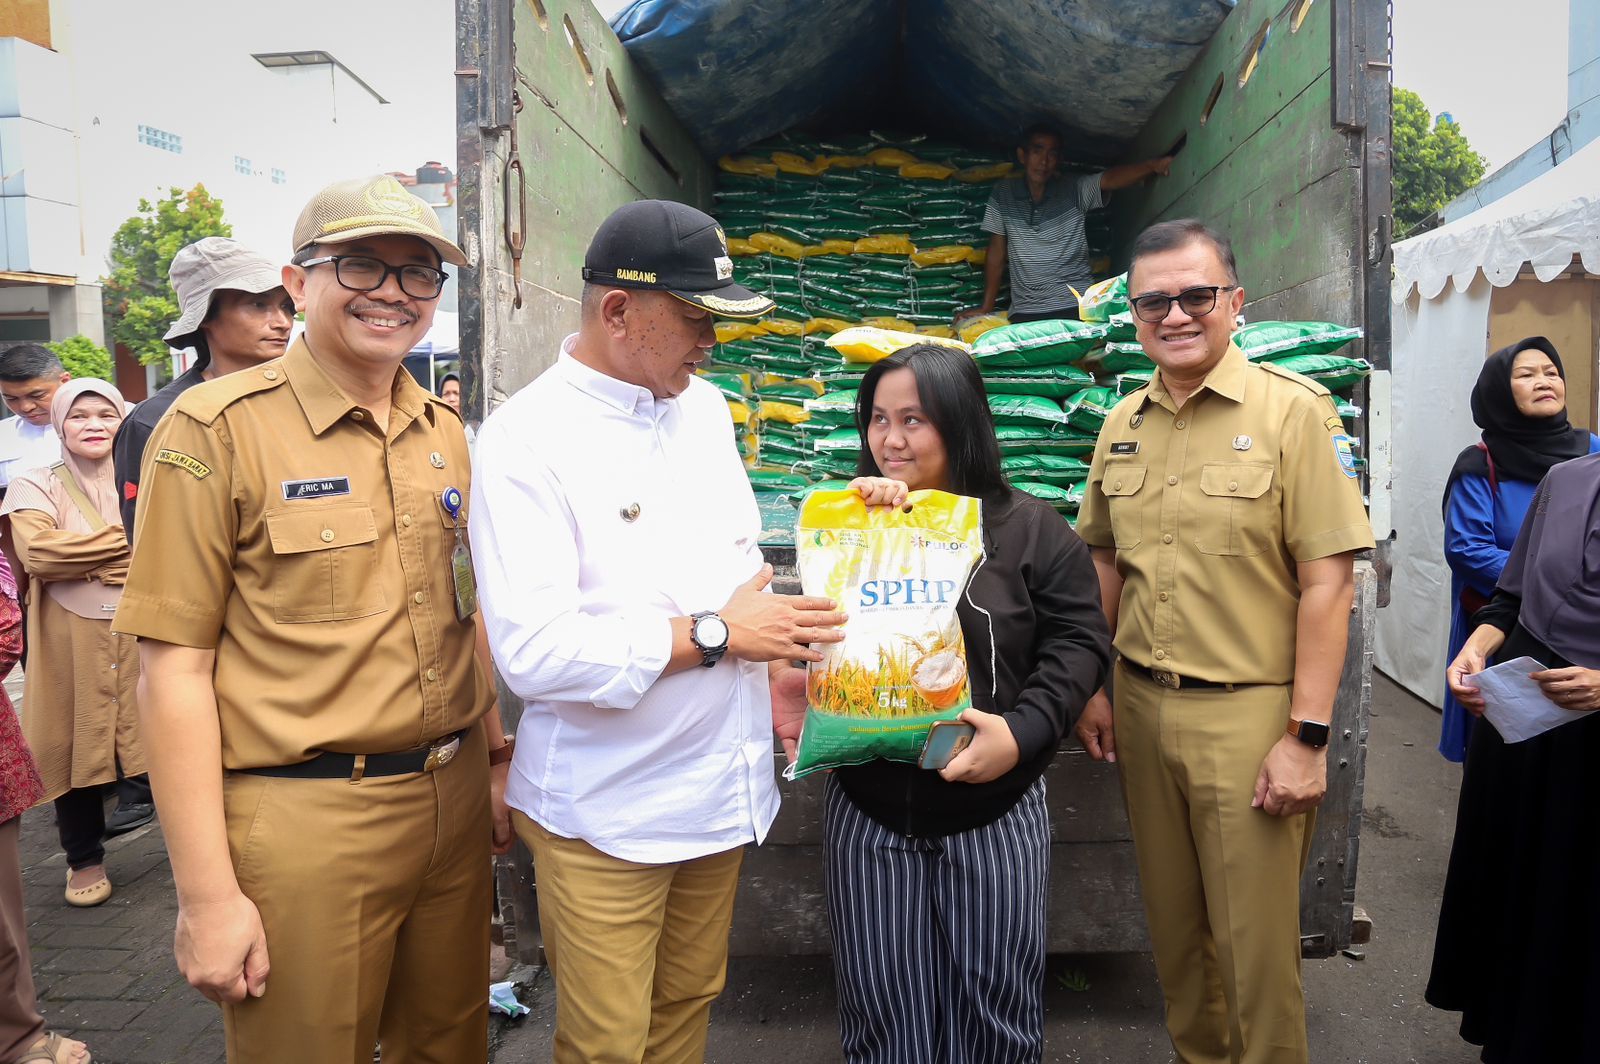 Harga beras naik, warga bisa mendapatkan harga beras hari ini Rp 10.600 perkilogram dalam operasi pasar pemkot Bandung